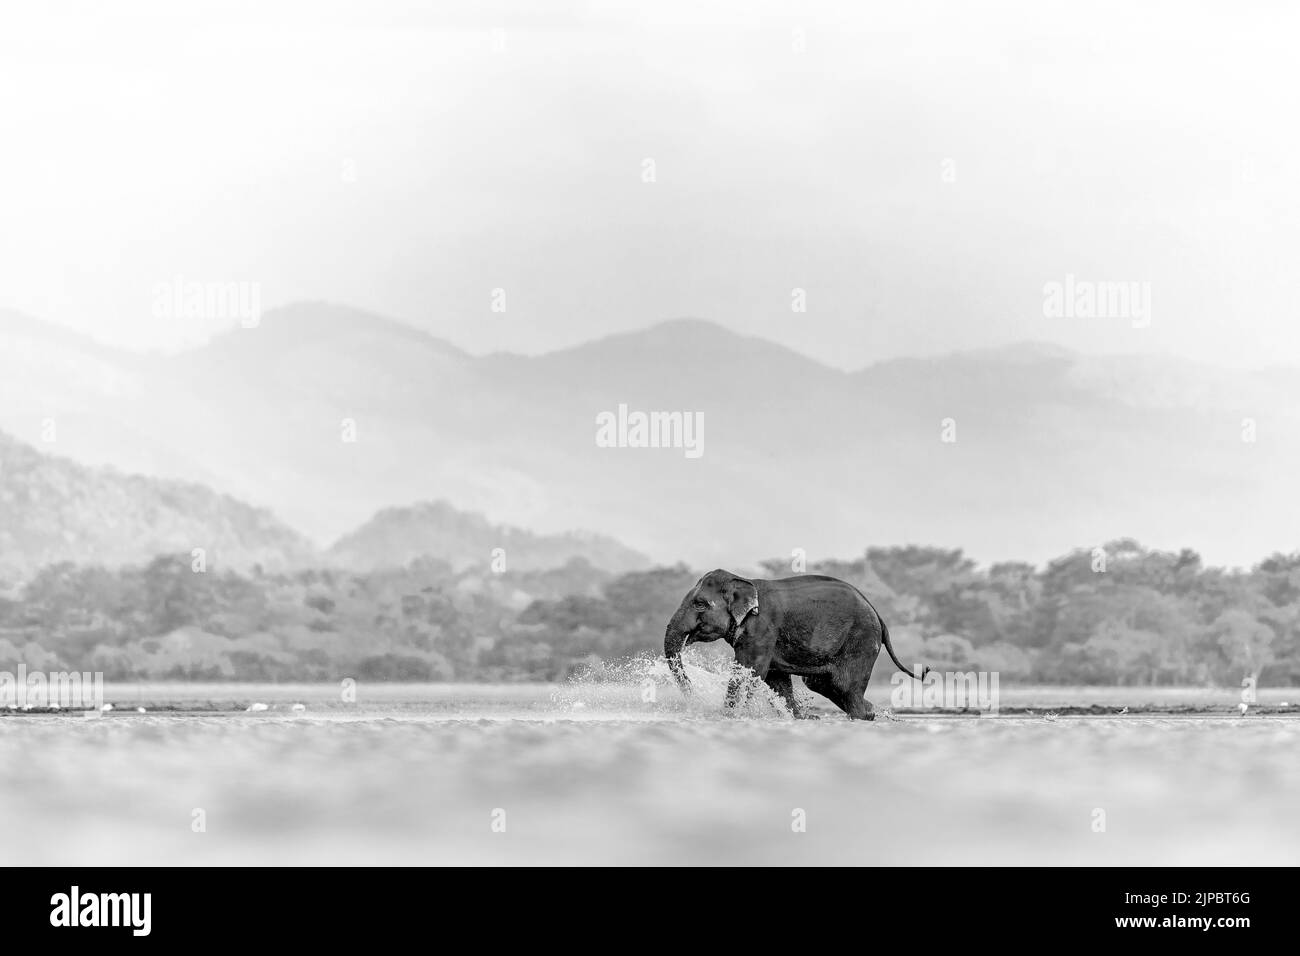 Un éléphant isolé qui tourne sur un champ en niveaux de gris Banque D'Images